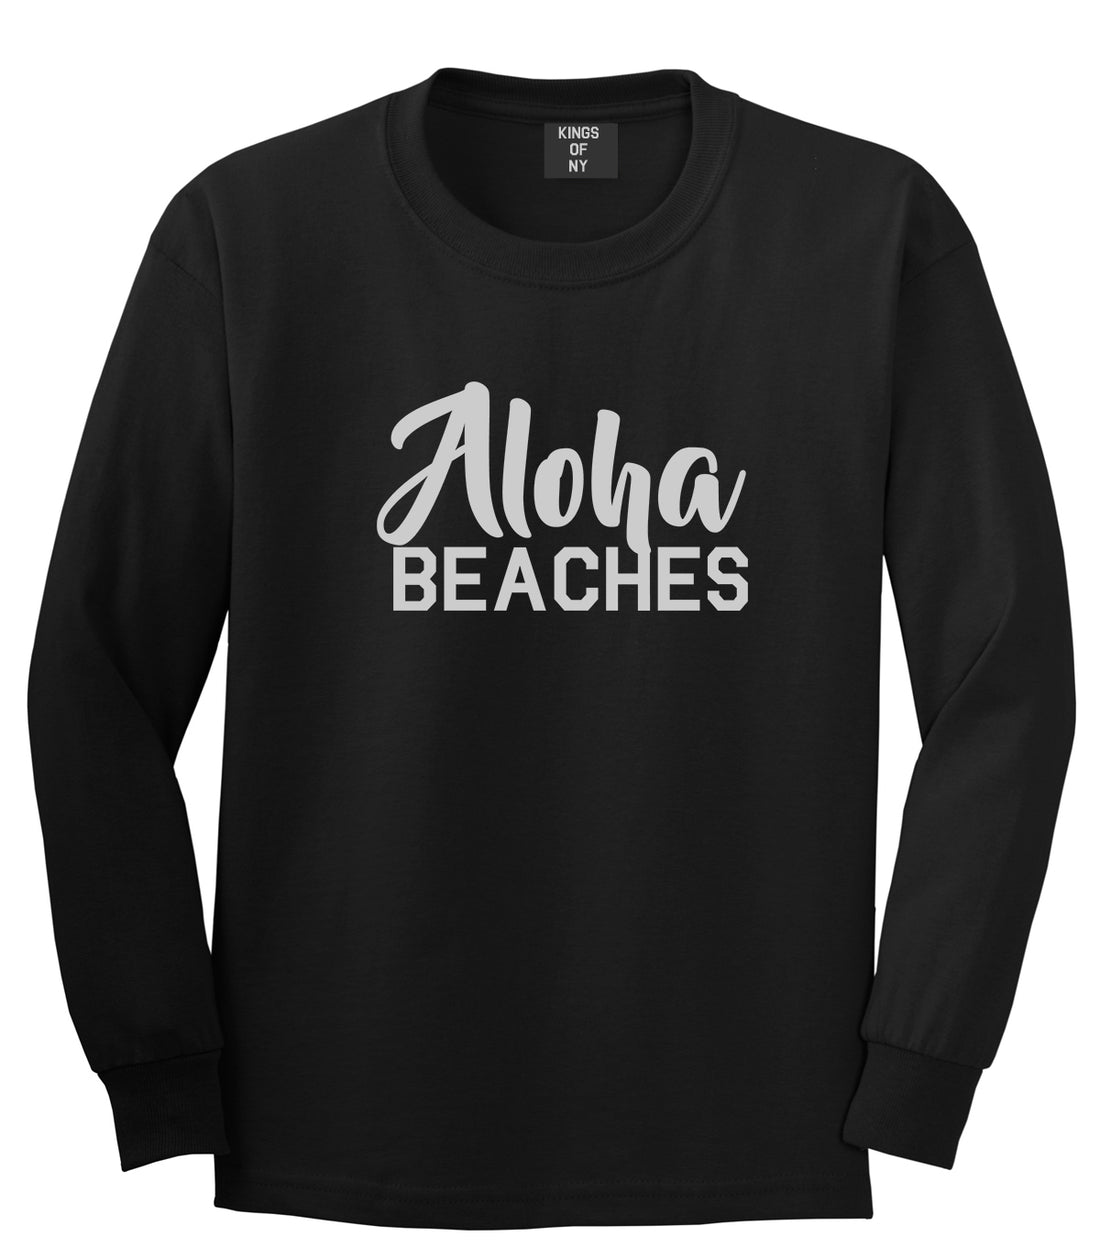 Aloha Beaches Black Long Sleeve T-Shirt by Kings Of NY